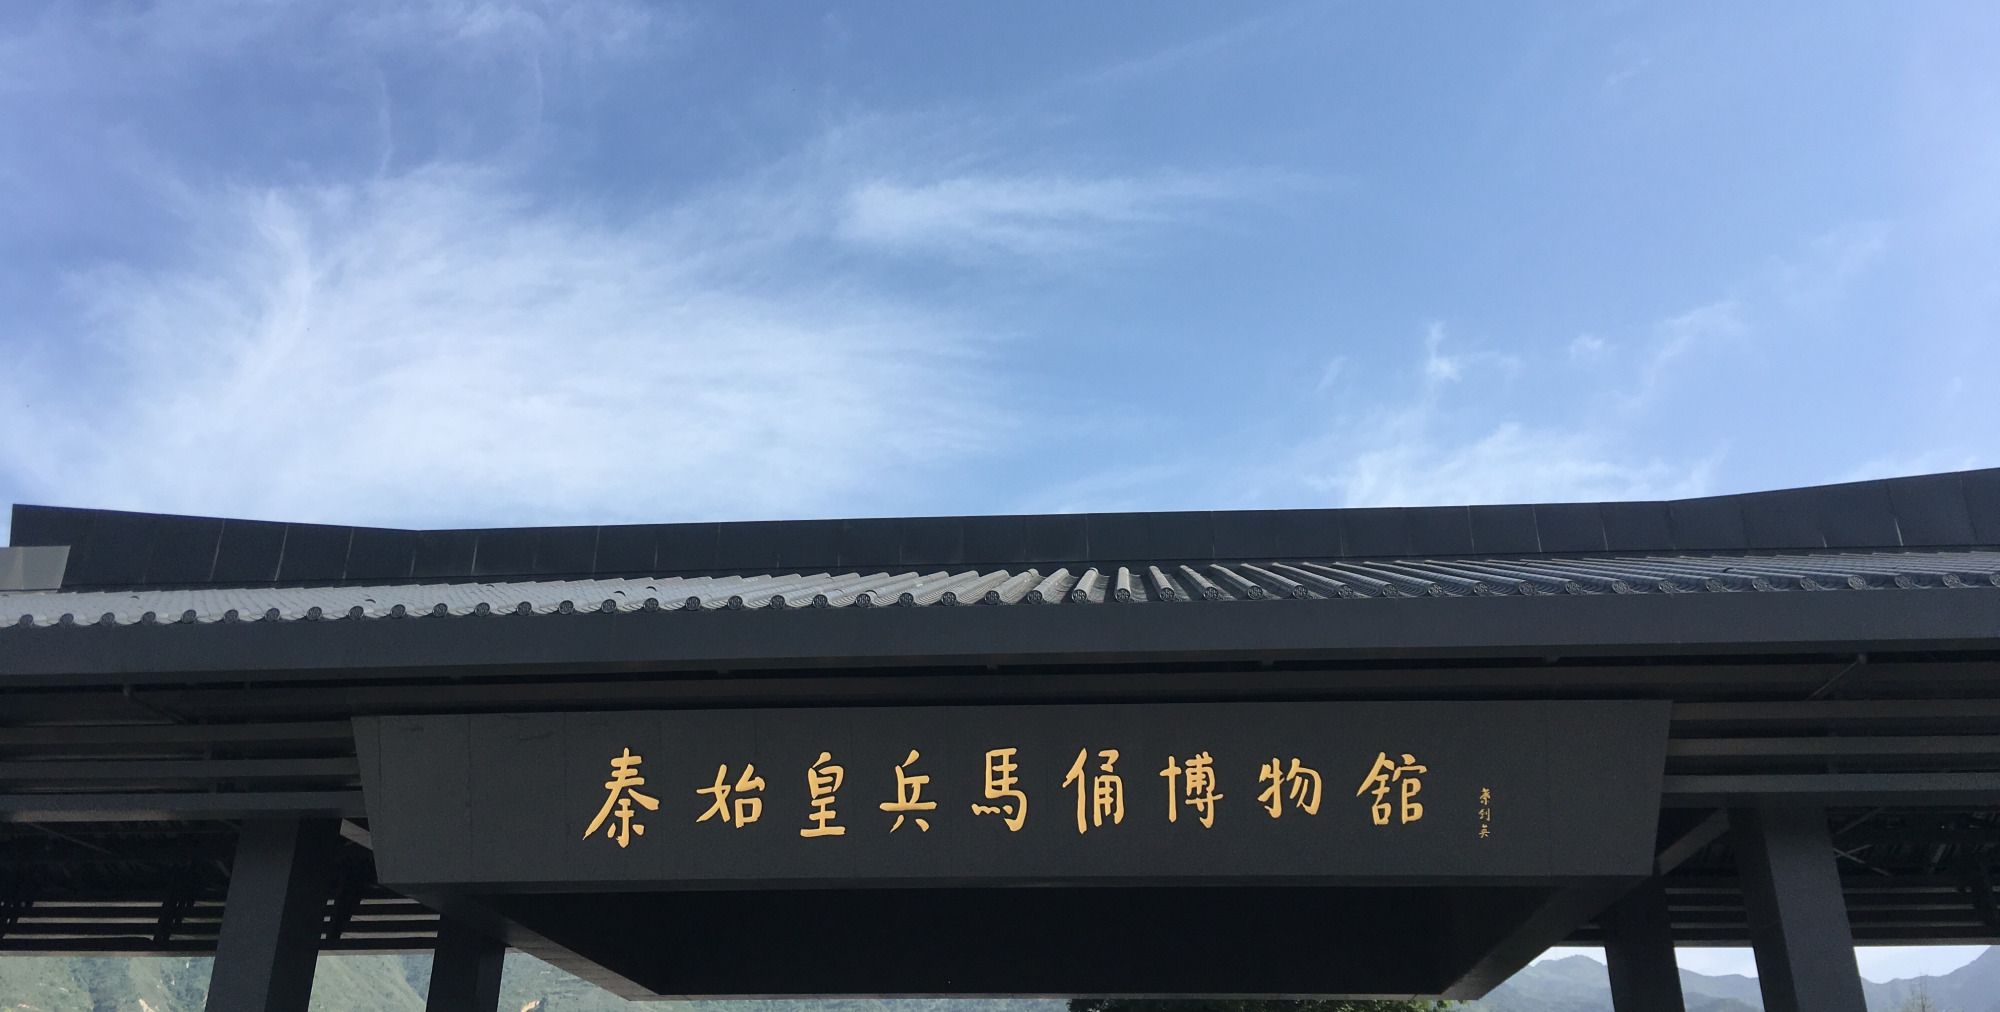 行走大中华:陕西秦始皇兵马俑博物馆